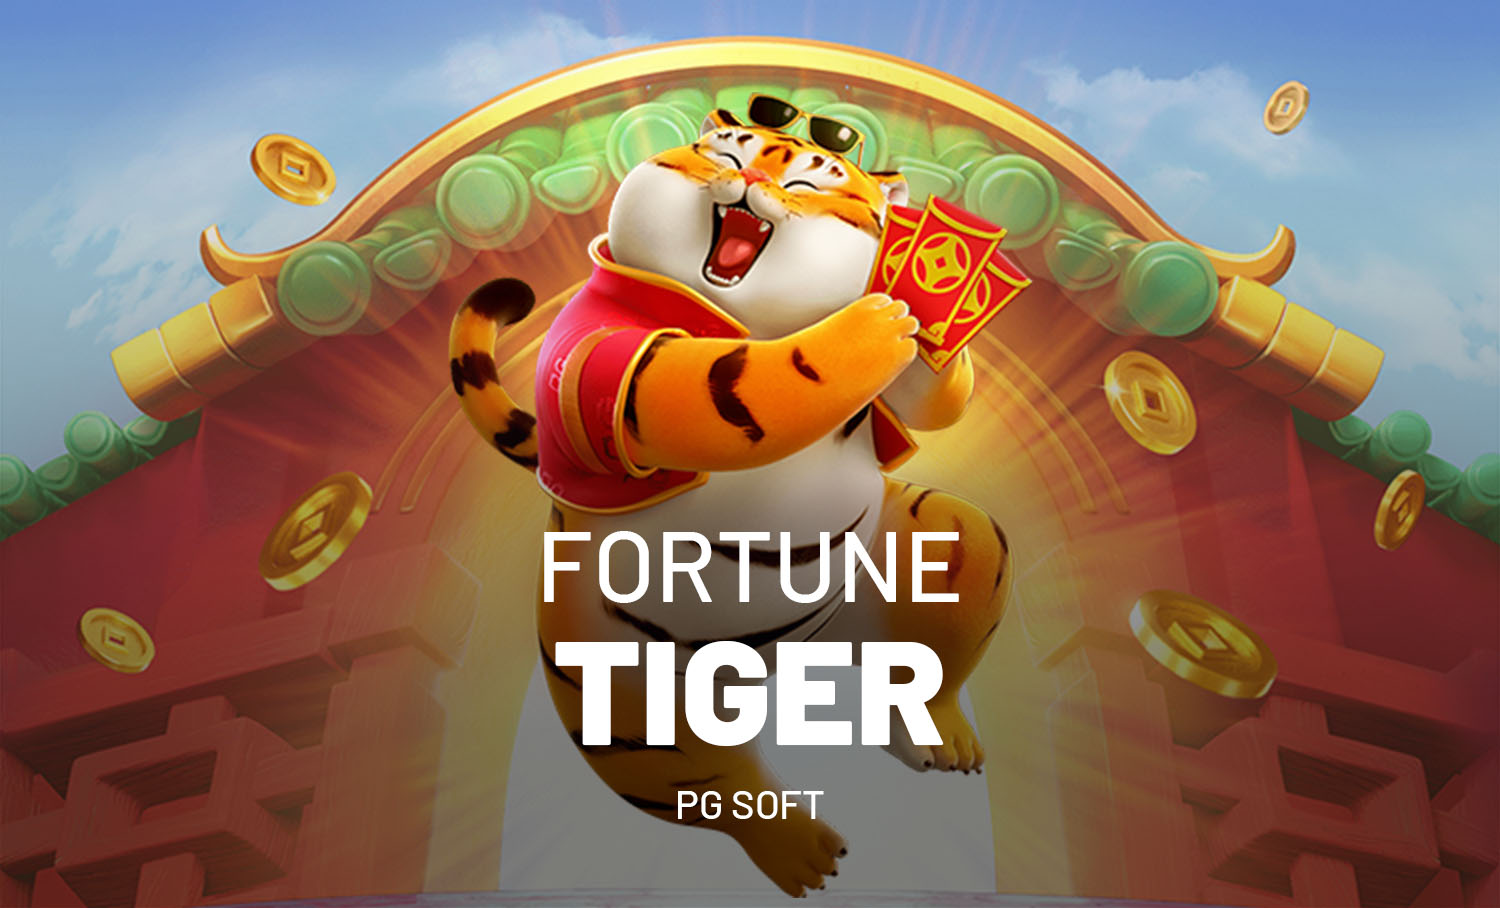 Fortune Tiger: será que o jogo do tigrinho é seguro? Confira!